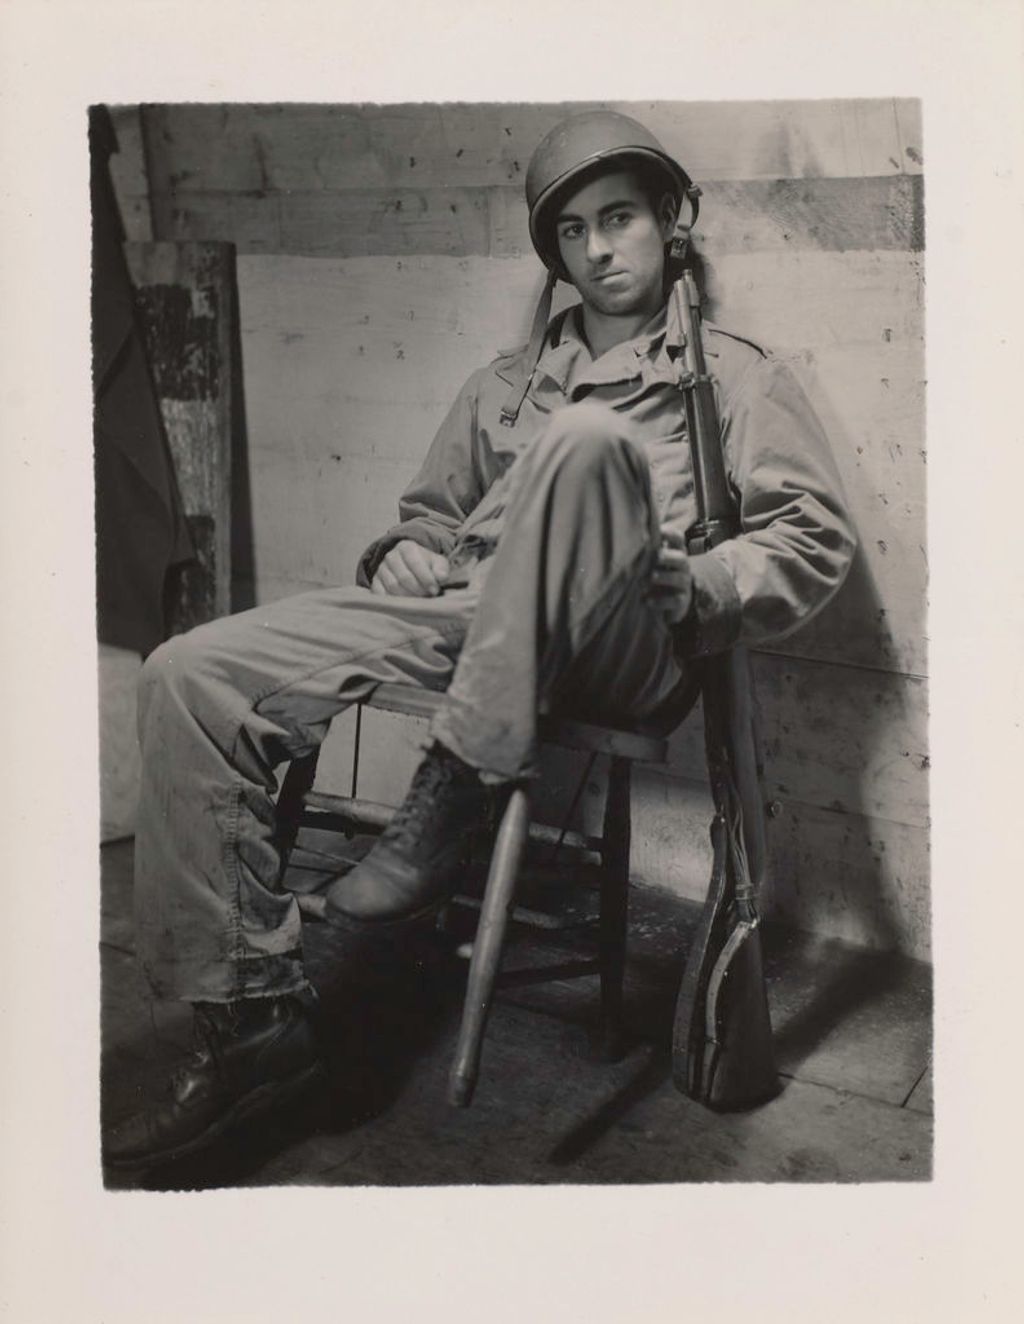 Minor White fotója
katonaportré
katona 